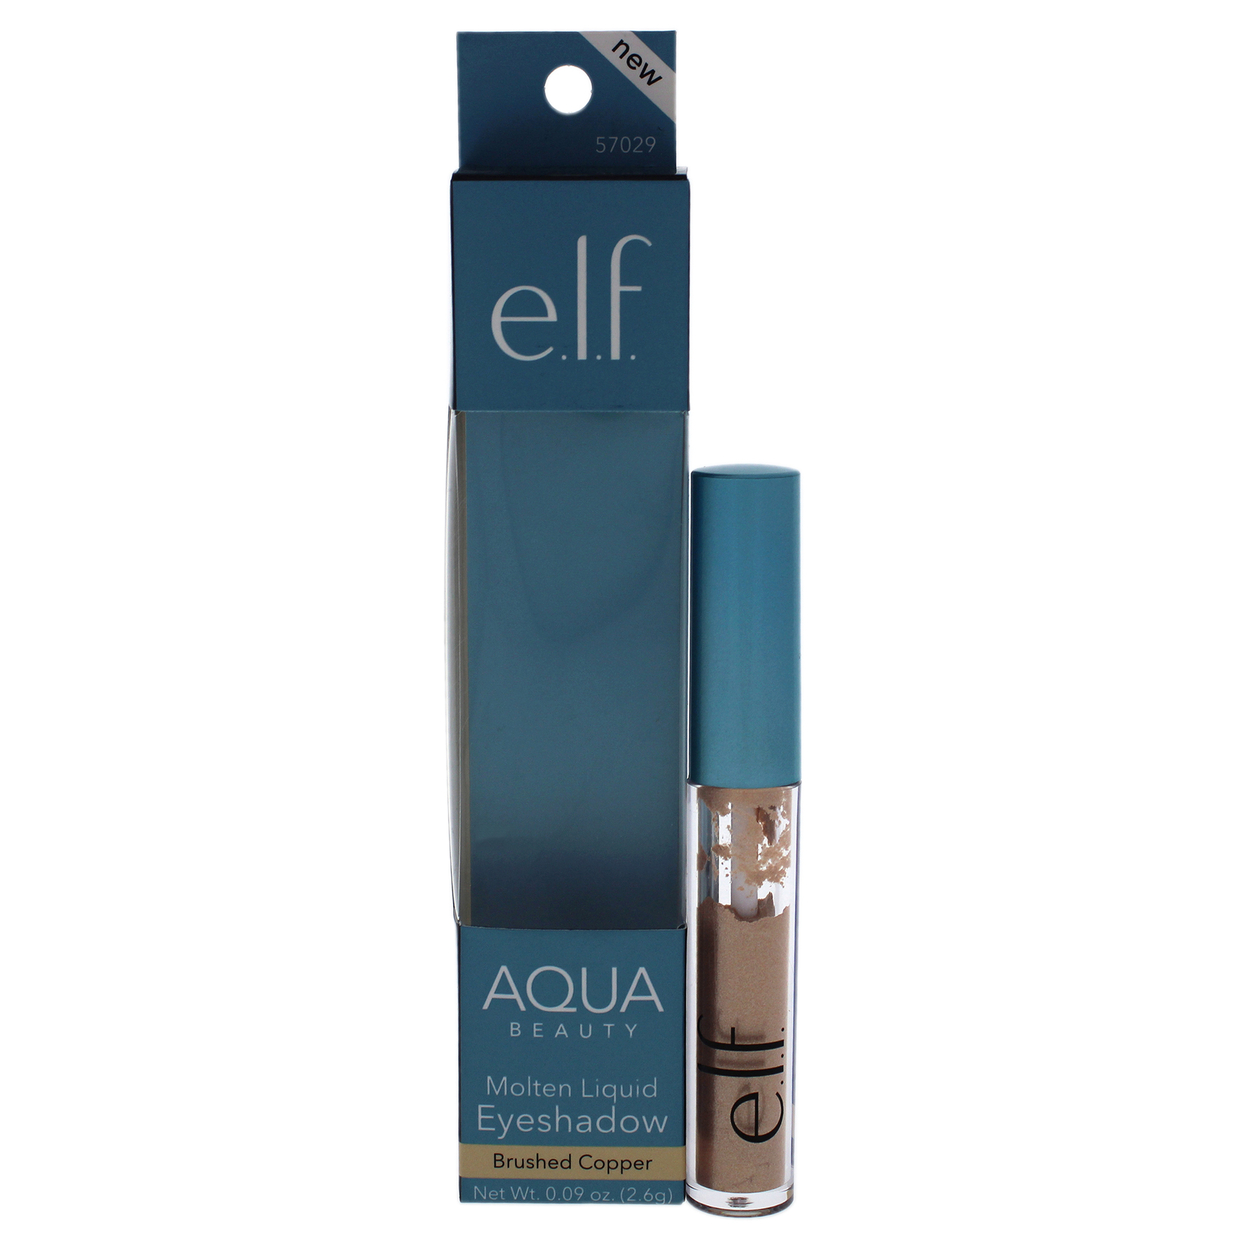 E.l.f. Aqua Beauty Molten Liquid Eyeshadow - Brushed Copper Eye Shadow 0.09 Oz